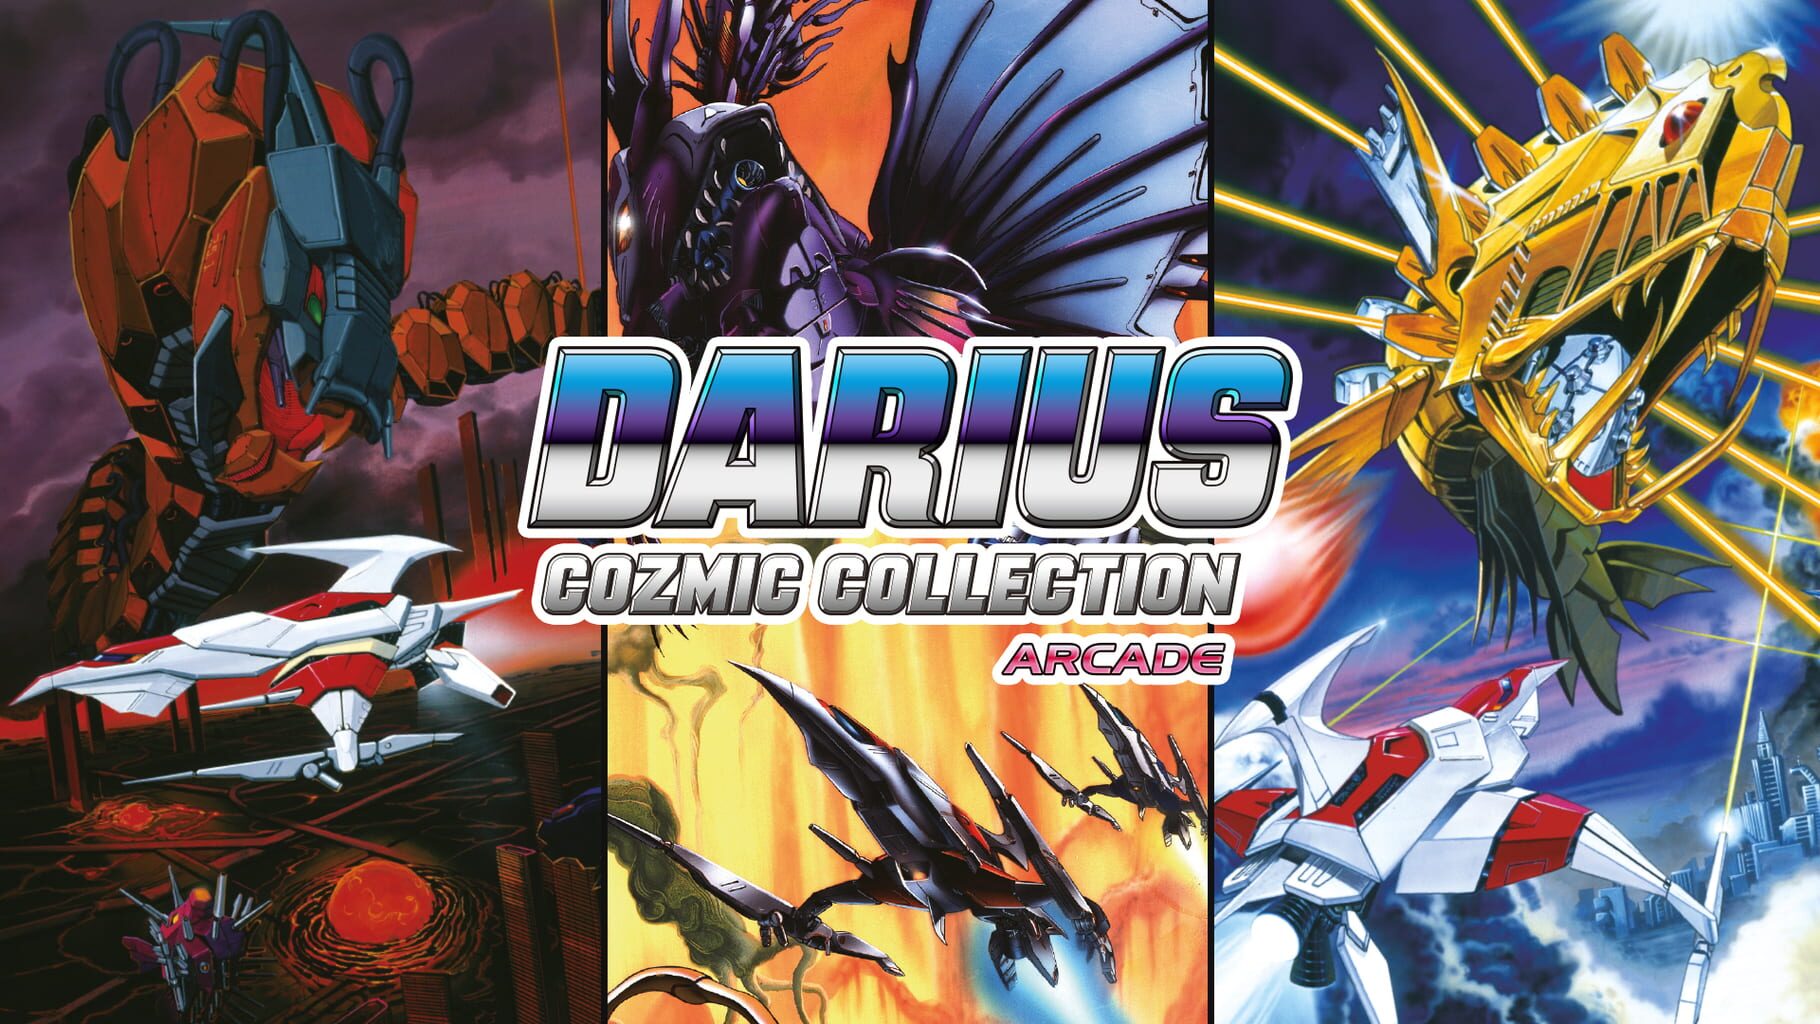 Darius Cozmic Collection Arcade artwork